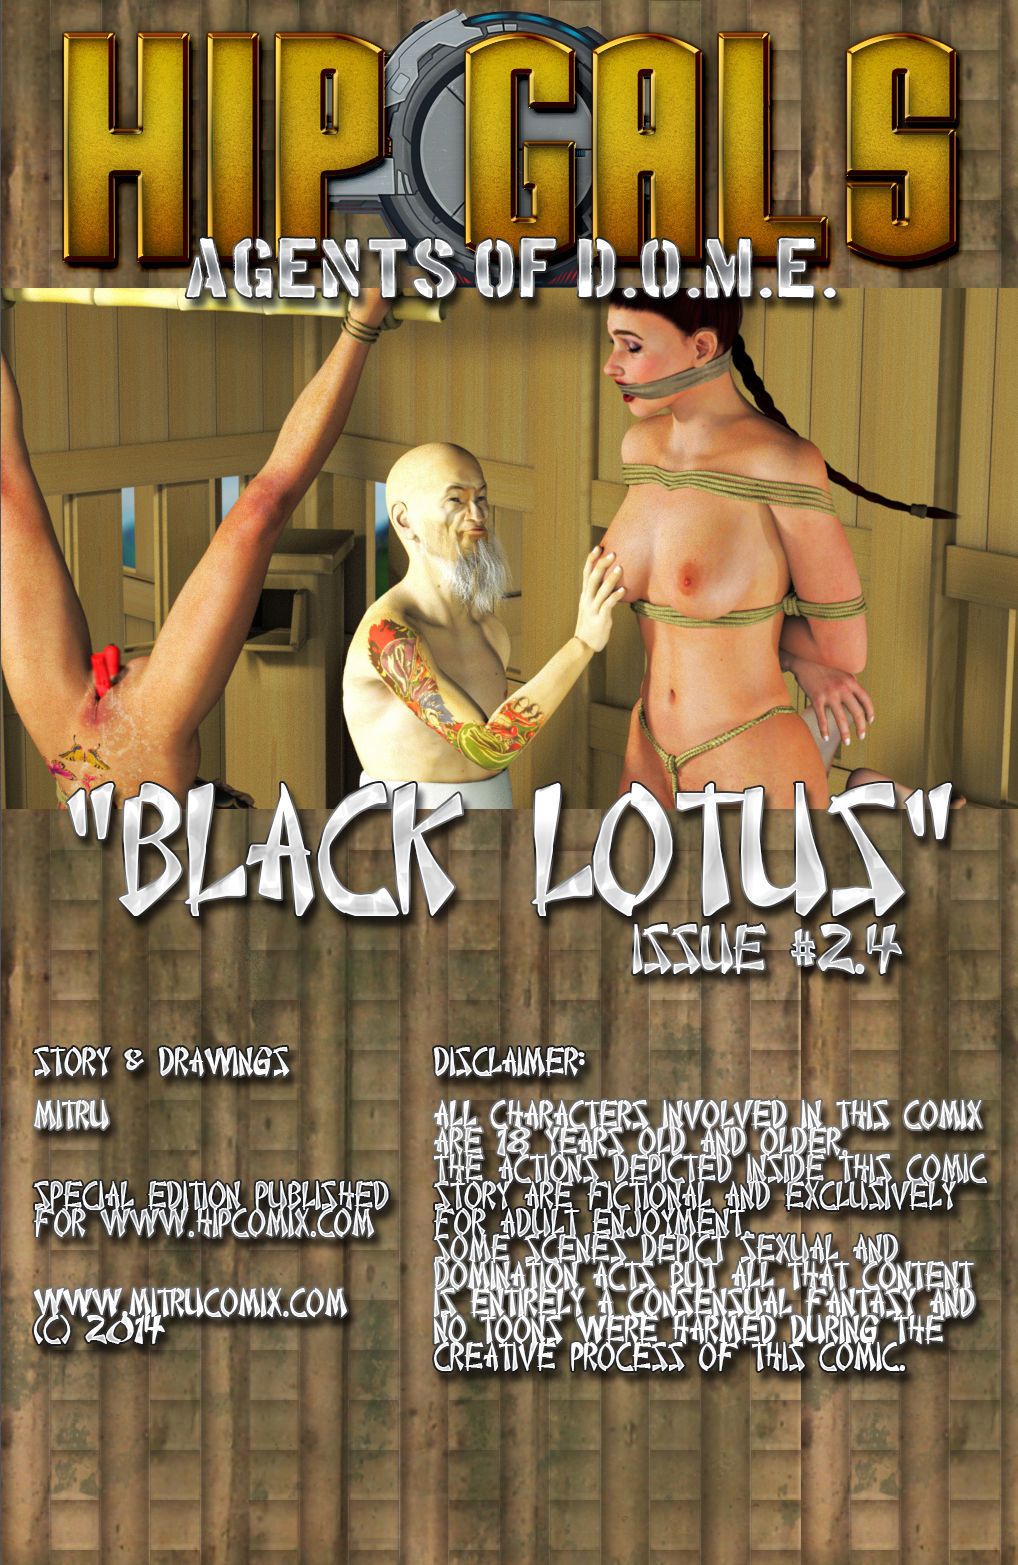 Siyah lotus 1-6 - PART 4